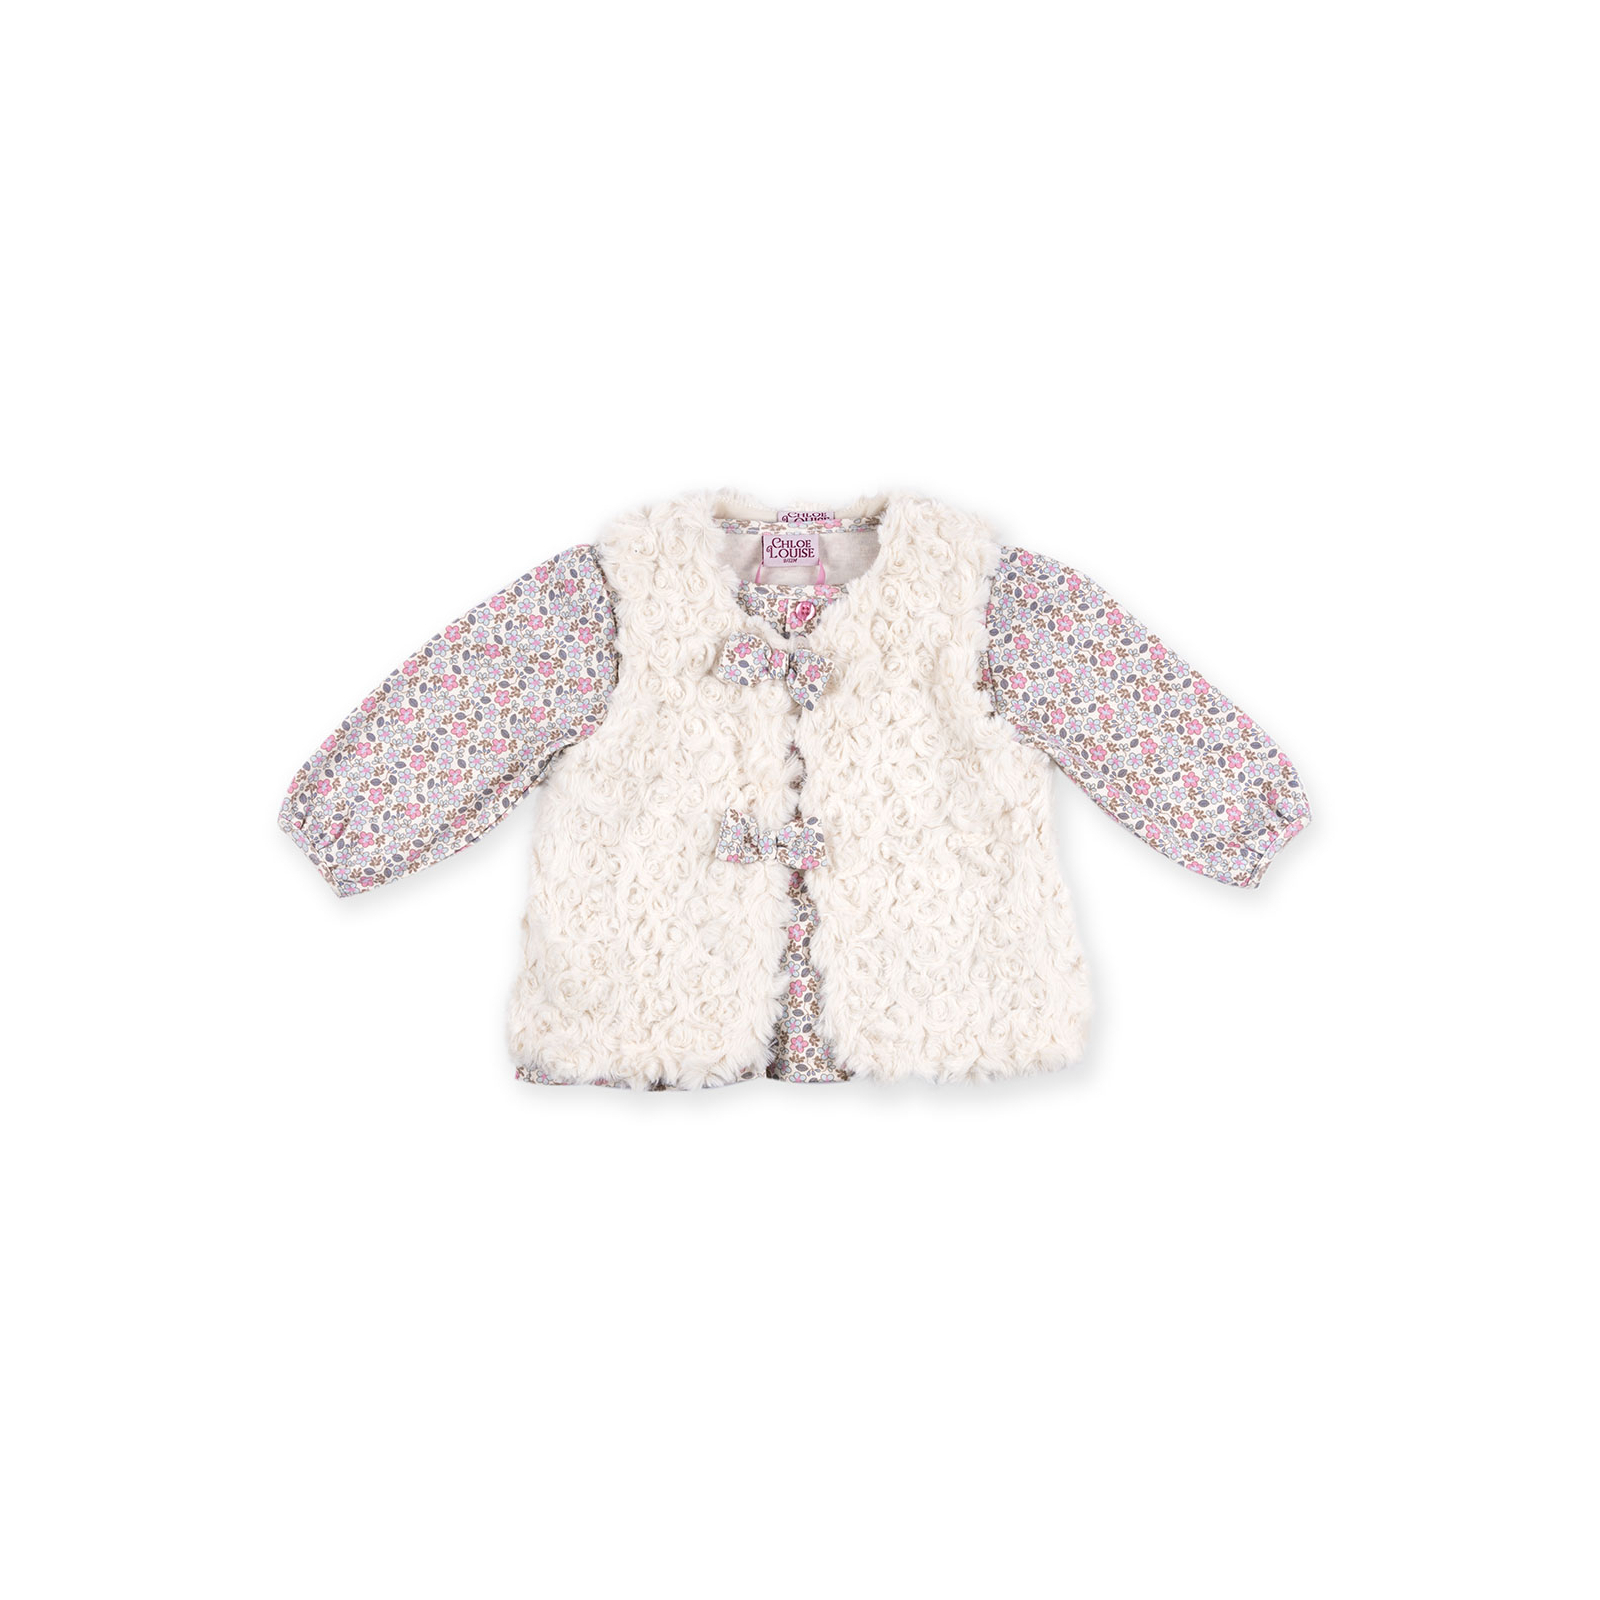 Набор детской одежды Luvena Fortuna для девочек: кофточка, штанишки и меховая жилетка (G8234.R.12-18) изображение 2